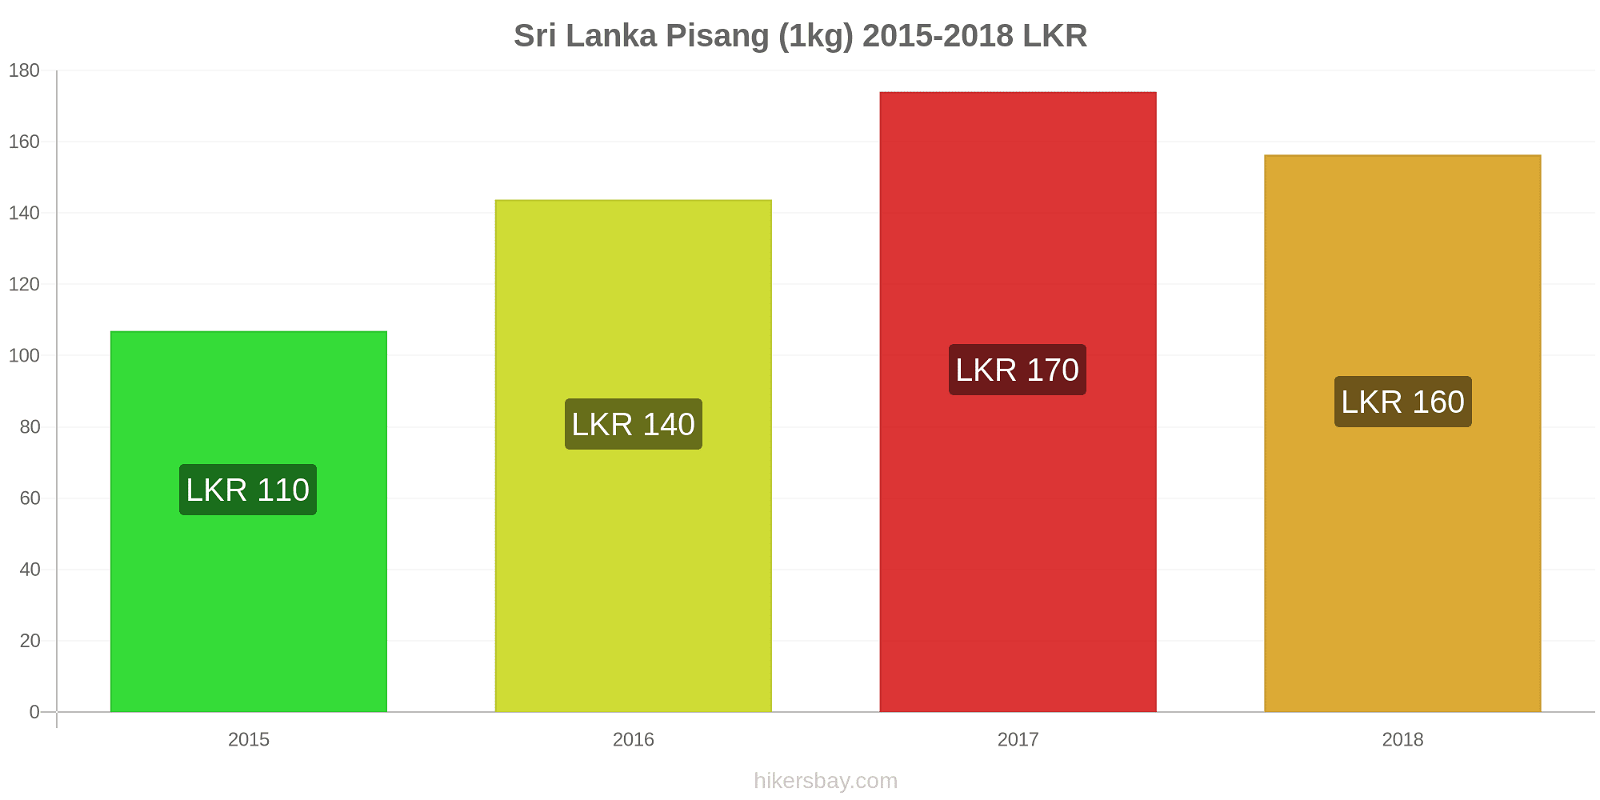 Sri Lanka perubahan harga Pisang (1kg) hikersbay.com